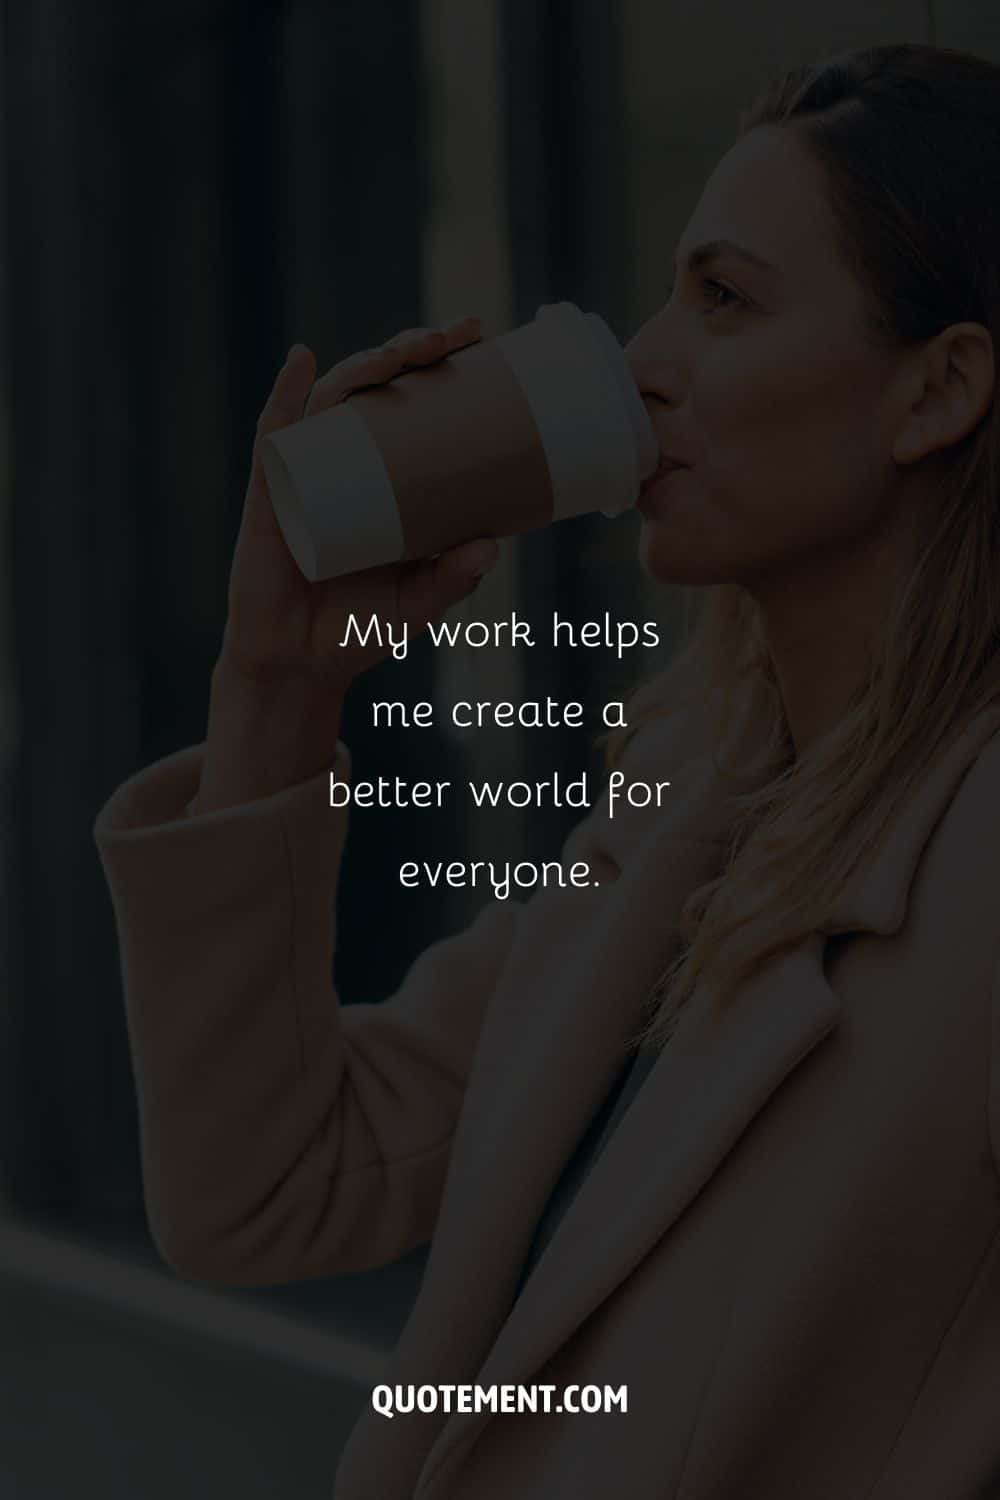 Mujer con una taza de café imagen que representa una afirmación para el trabajo.